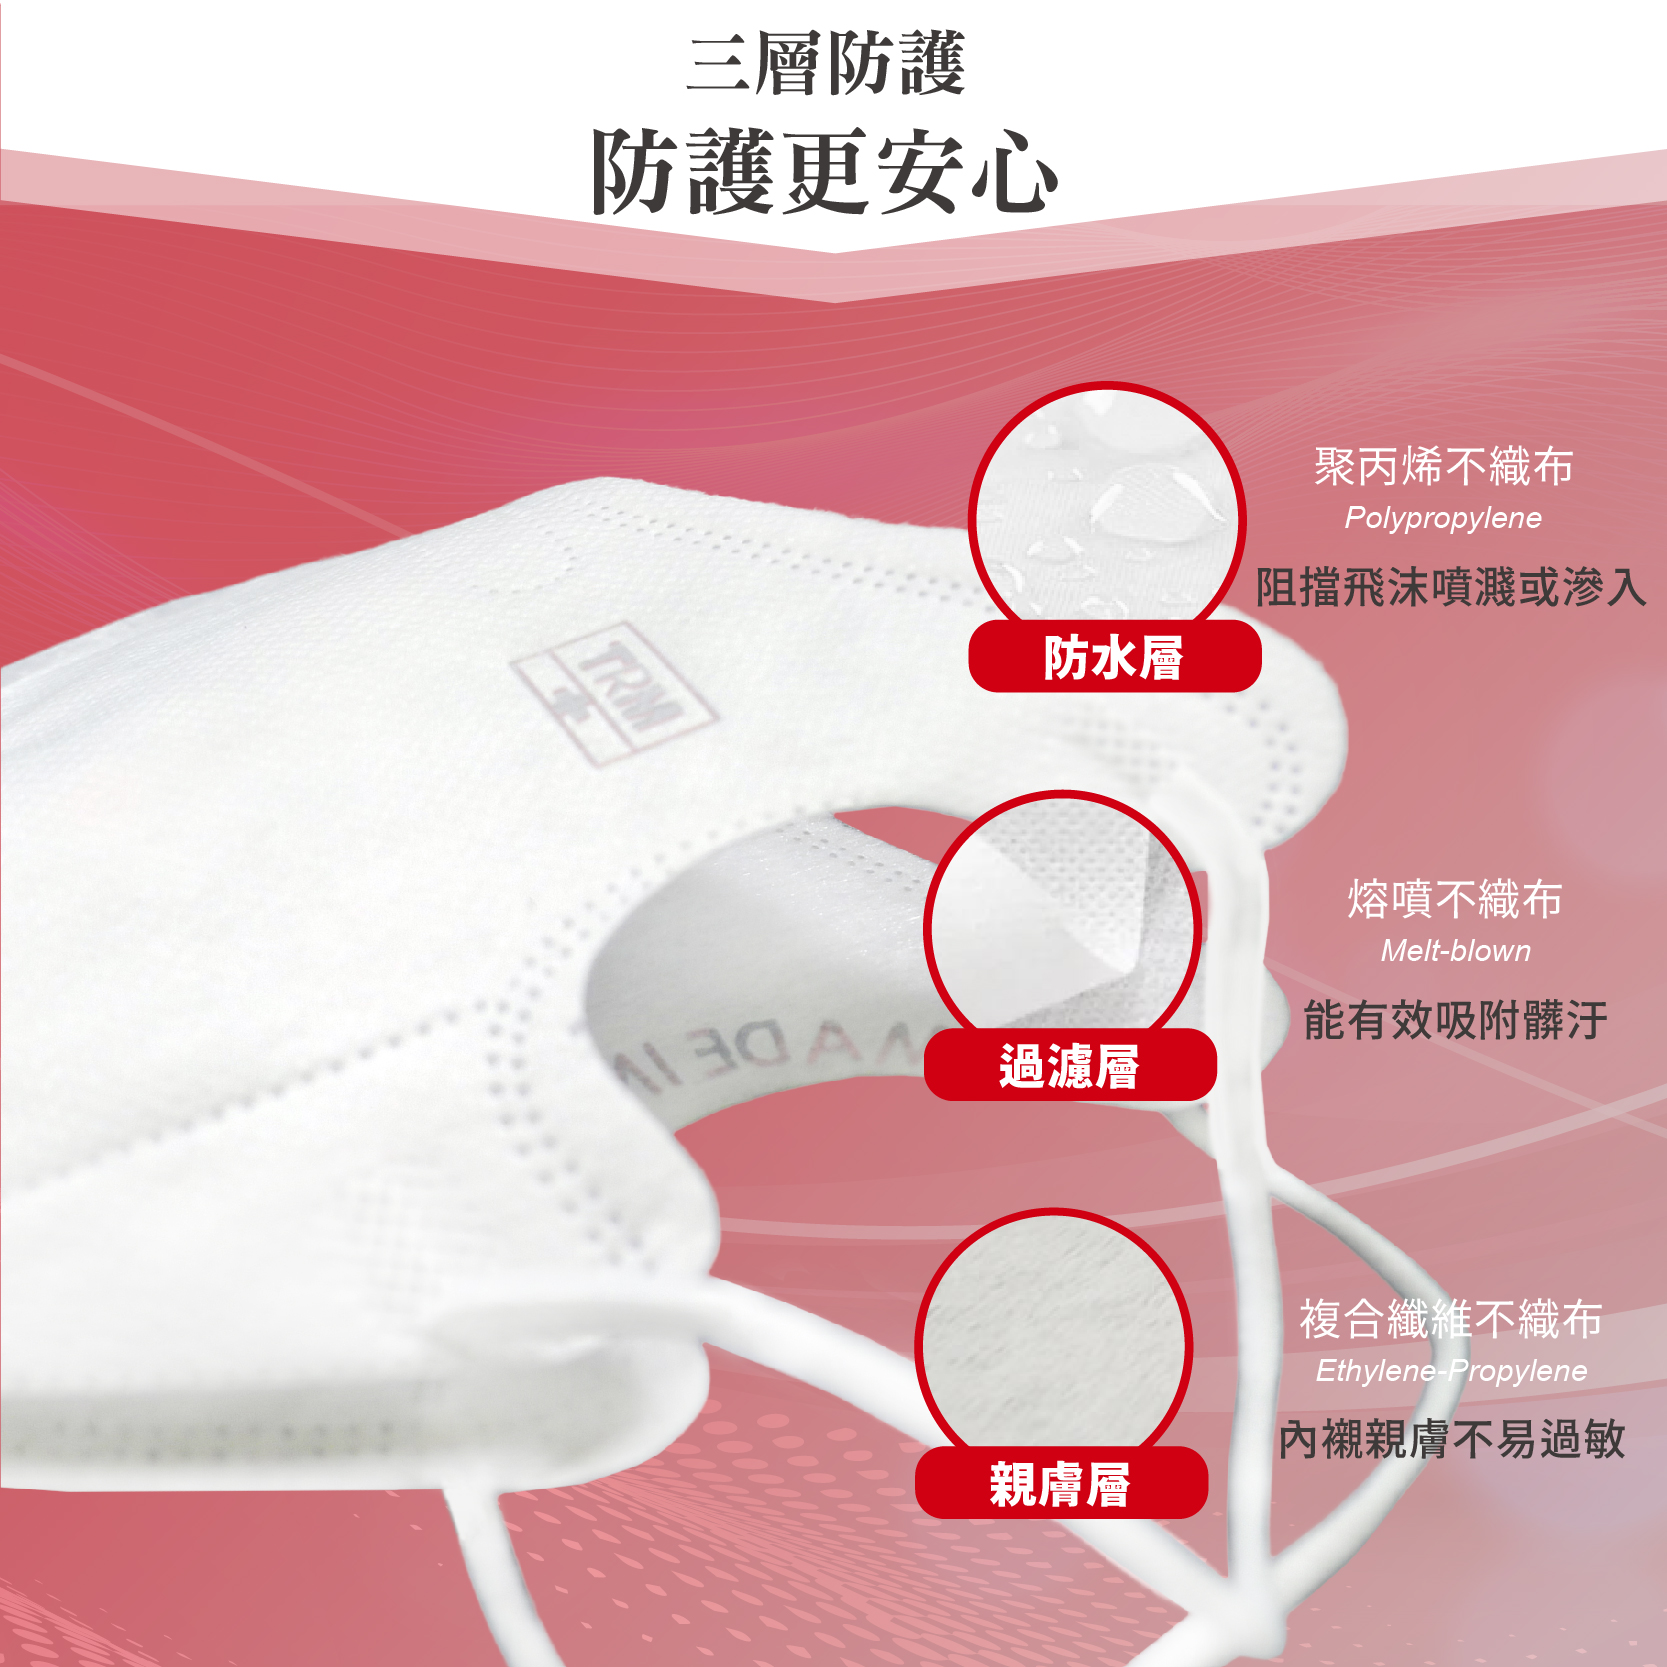 【台榮】MIT3D立體防護口罩 鼻線款 50枚/盒 4色可選 